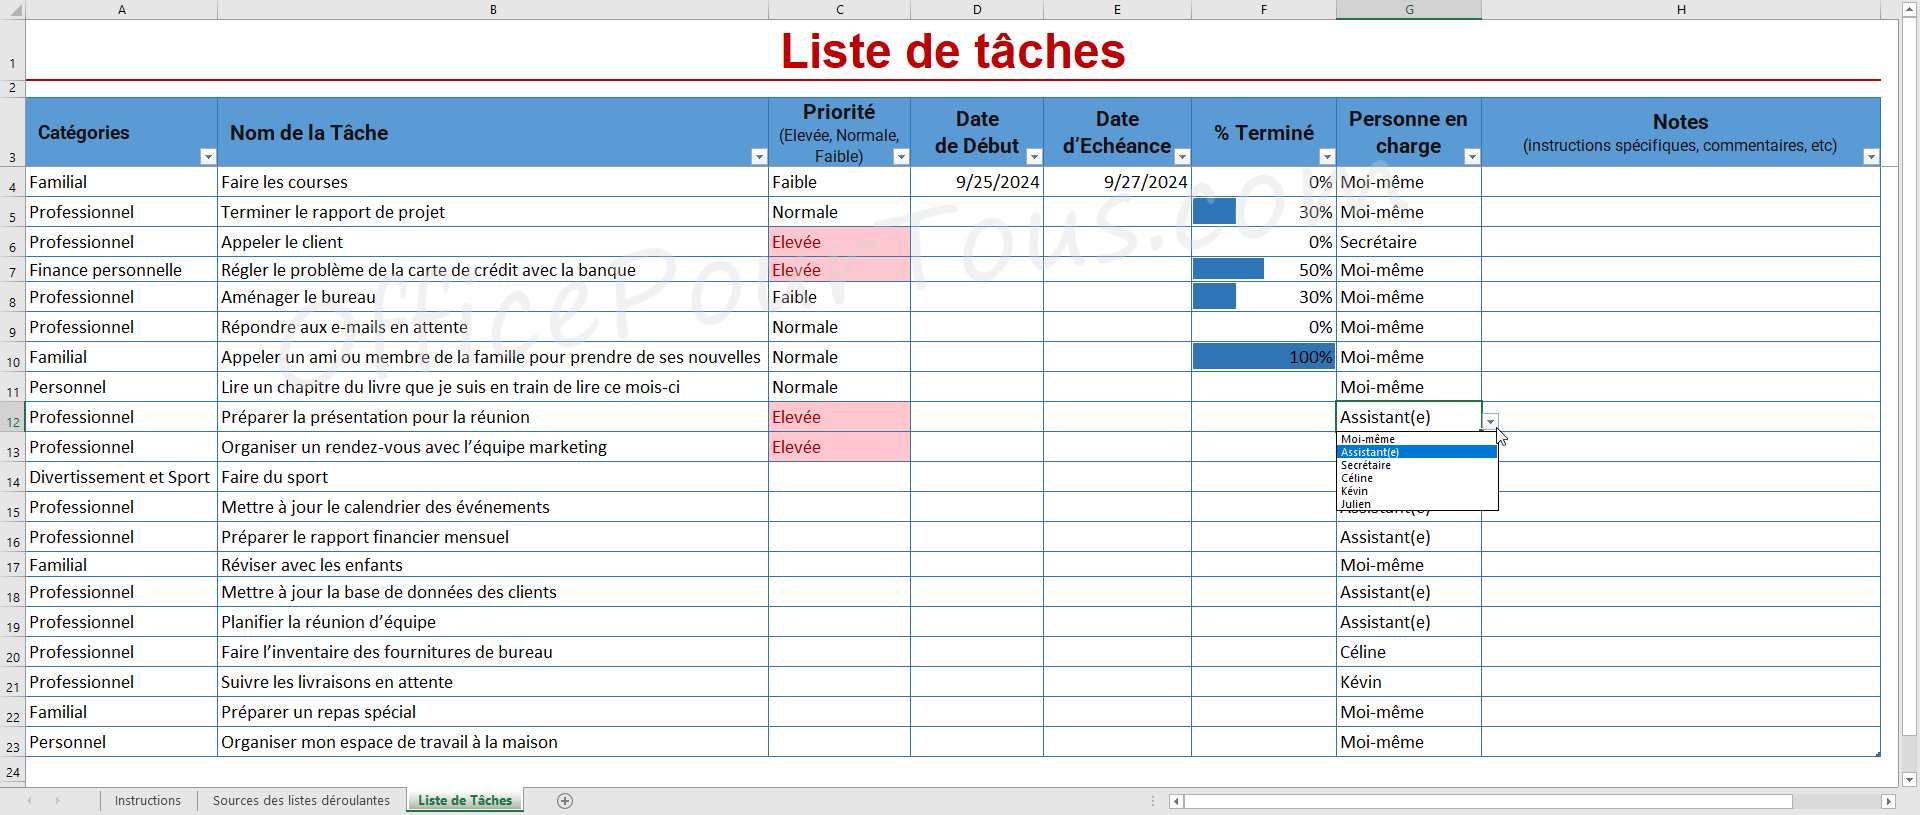 Modèle Excel "Liste de tâches avec catégories, barres de données et responsable"